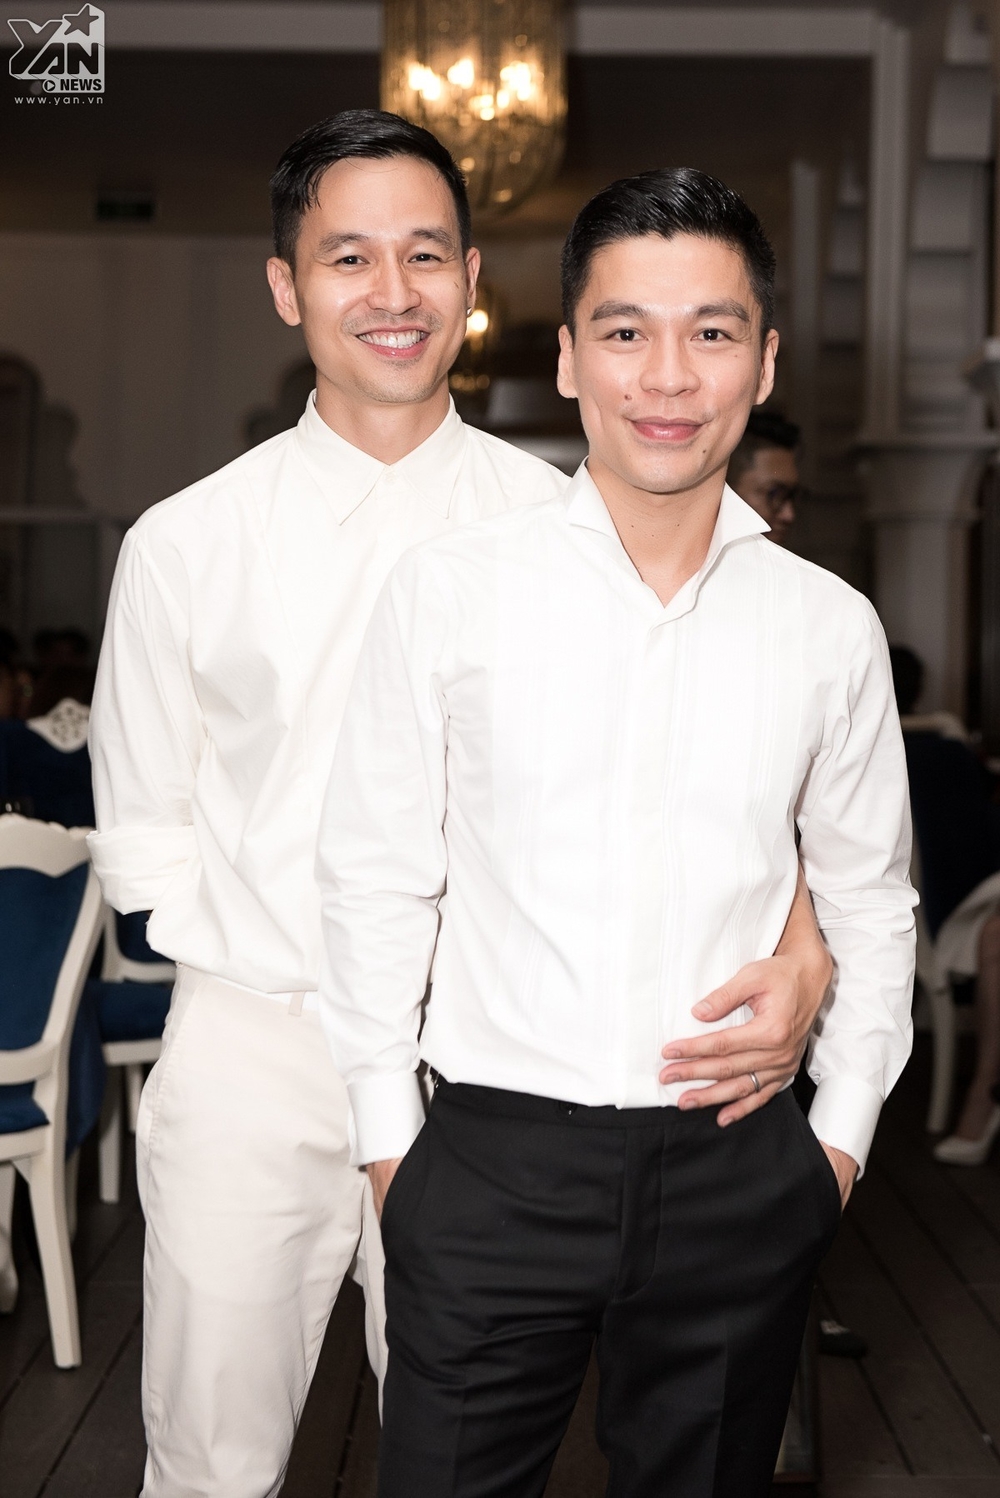  
Cặp đôi Adrian Anh Tuấn, Sơn Đoàn hạnh phúc tại sự kiện.